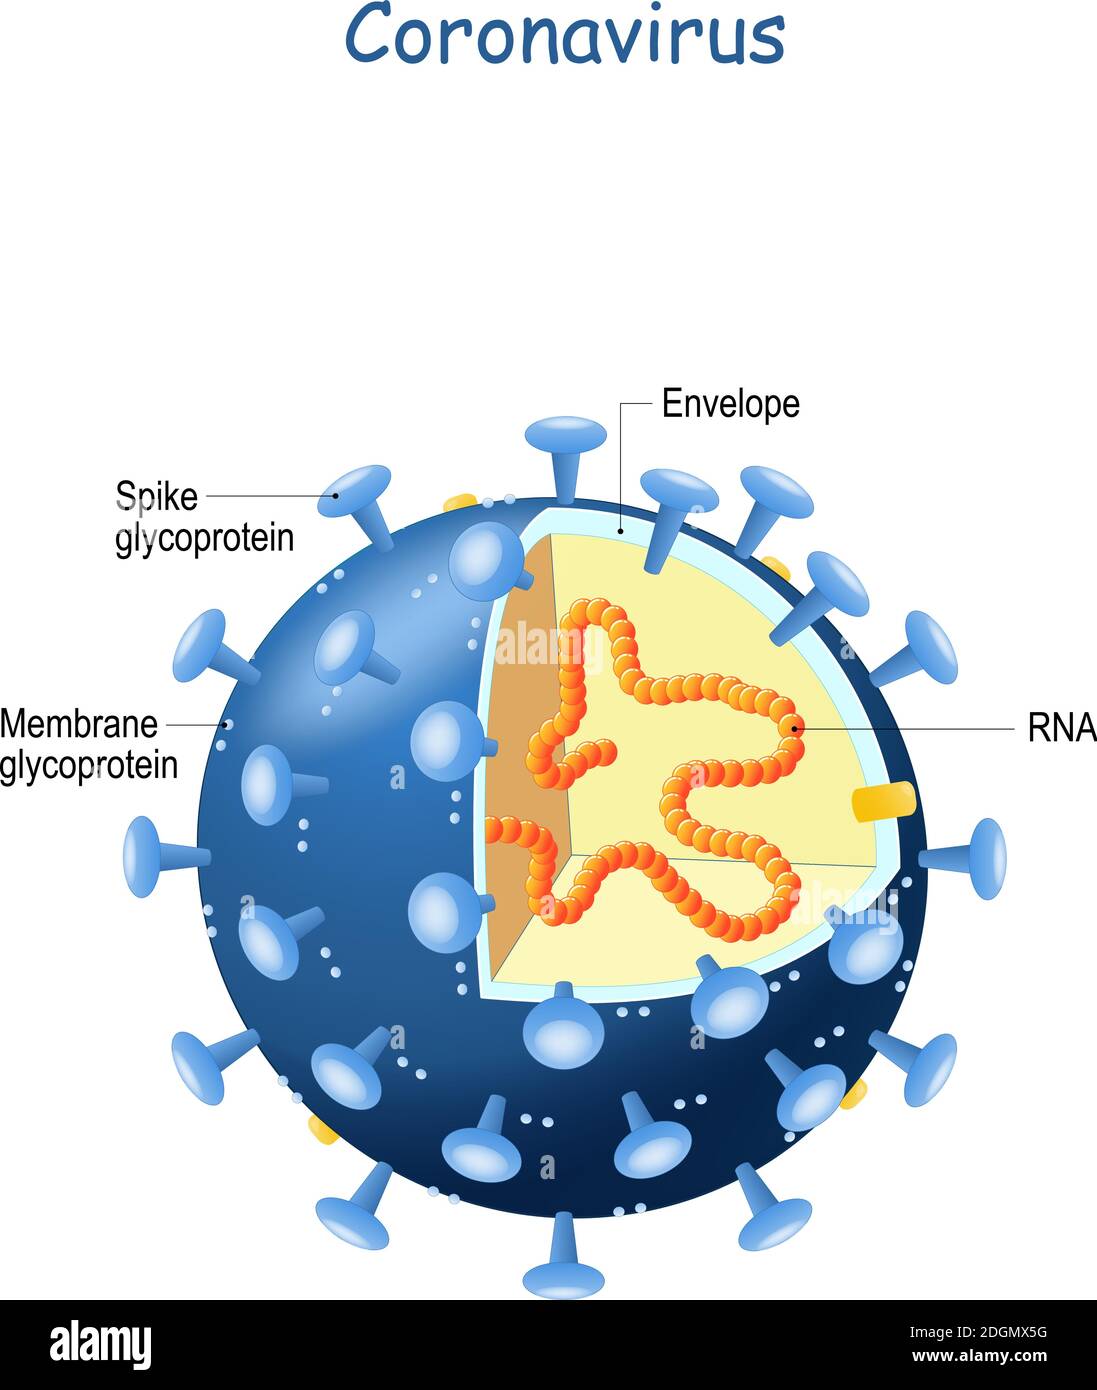 Coupe transversale du virion du coronavirus. Virus qui cause une maladie chez l'homme, du rhume jusqu'au SRAS. 2019-nCoV Illustration de Vecteur